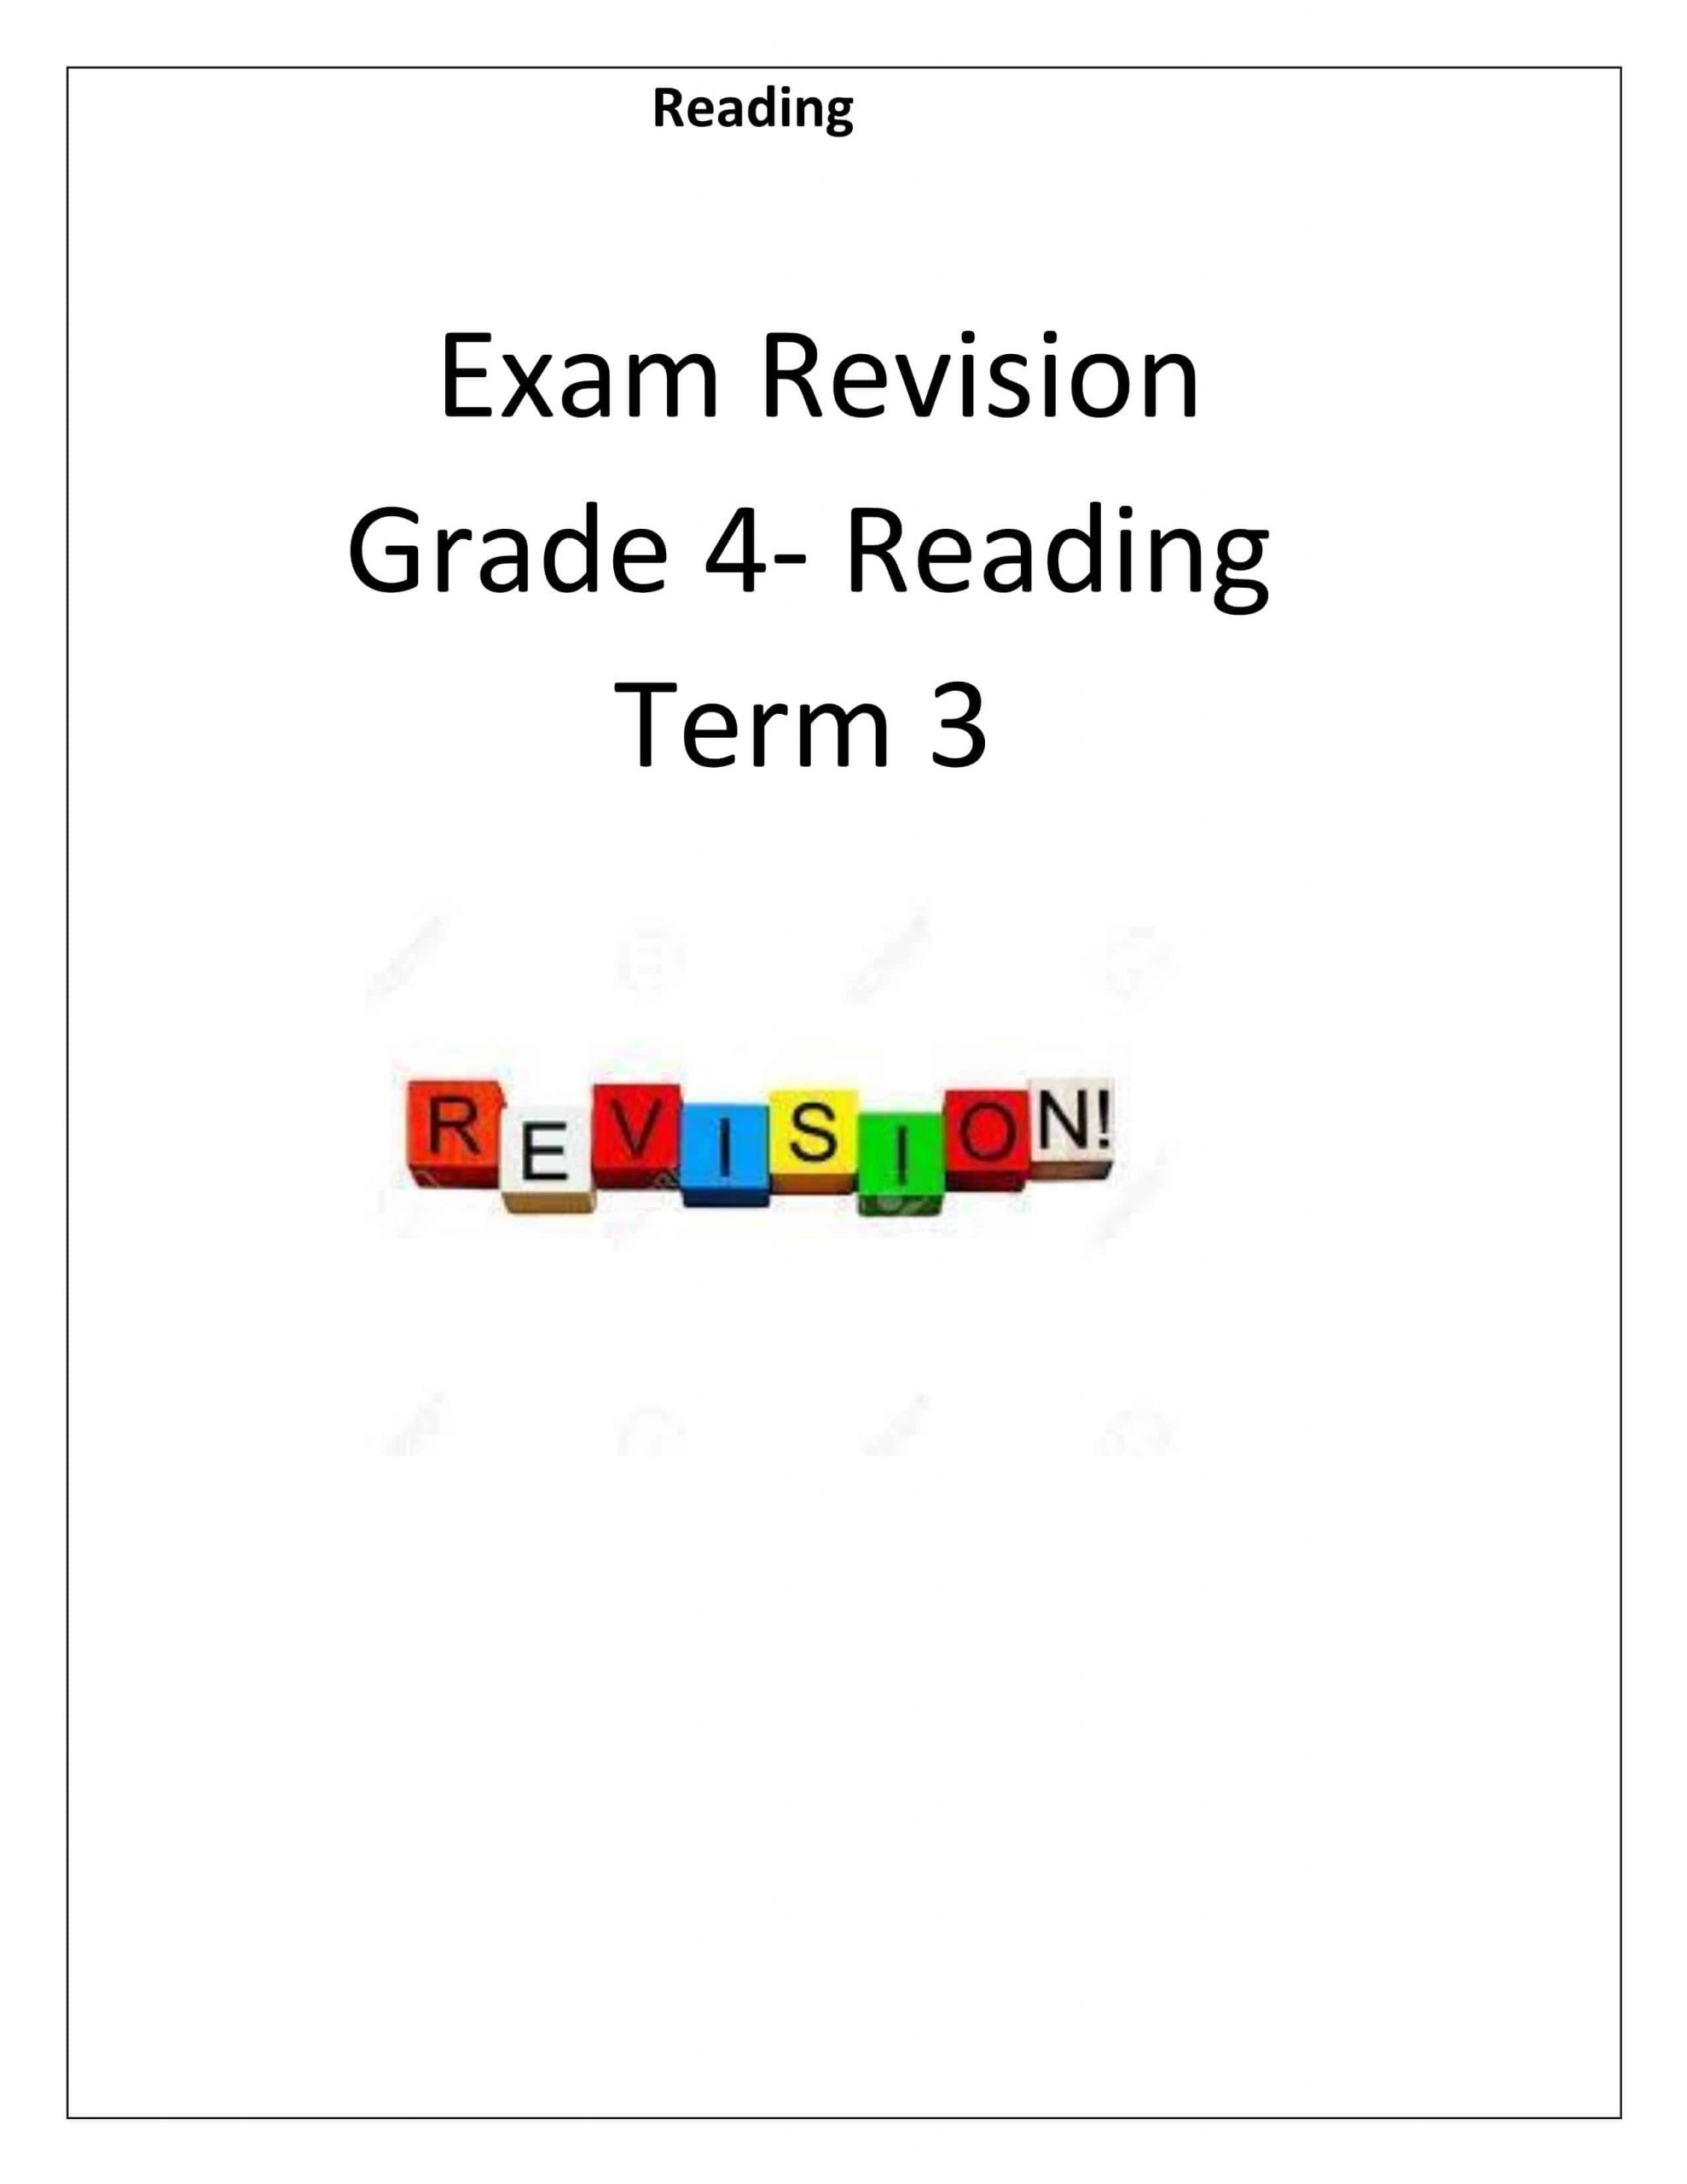 أوراق عمل Reading Exam Revision الصف الرابع مادة اللغة الإنجليزية